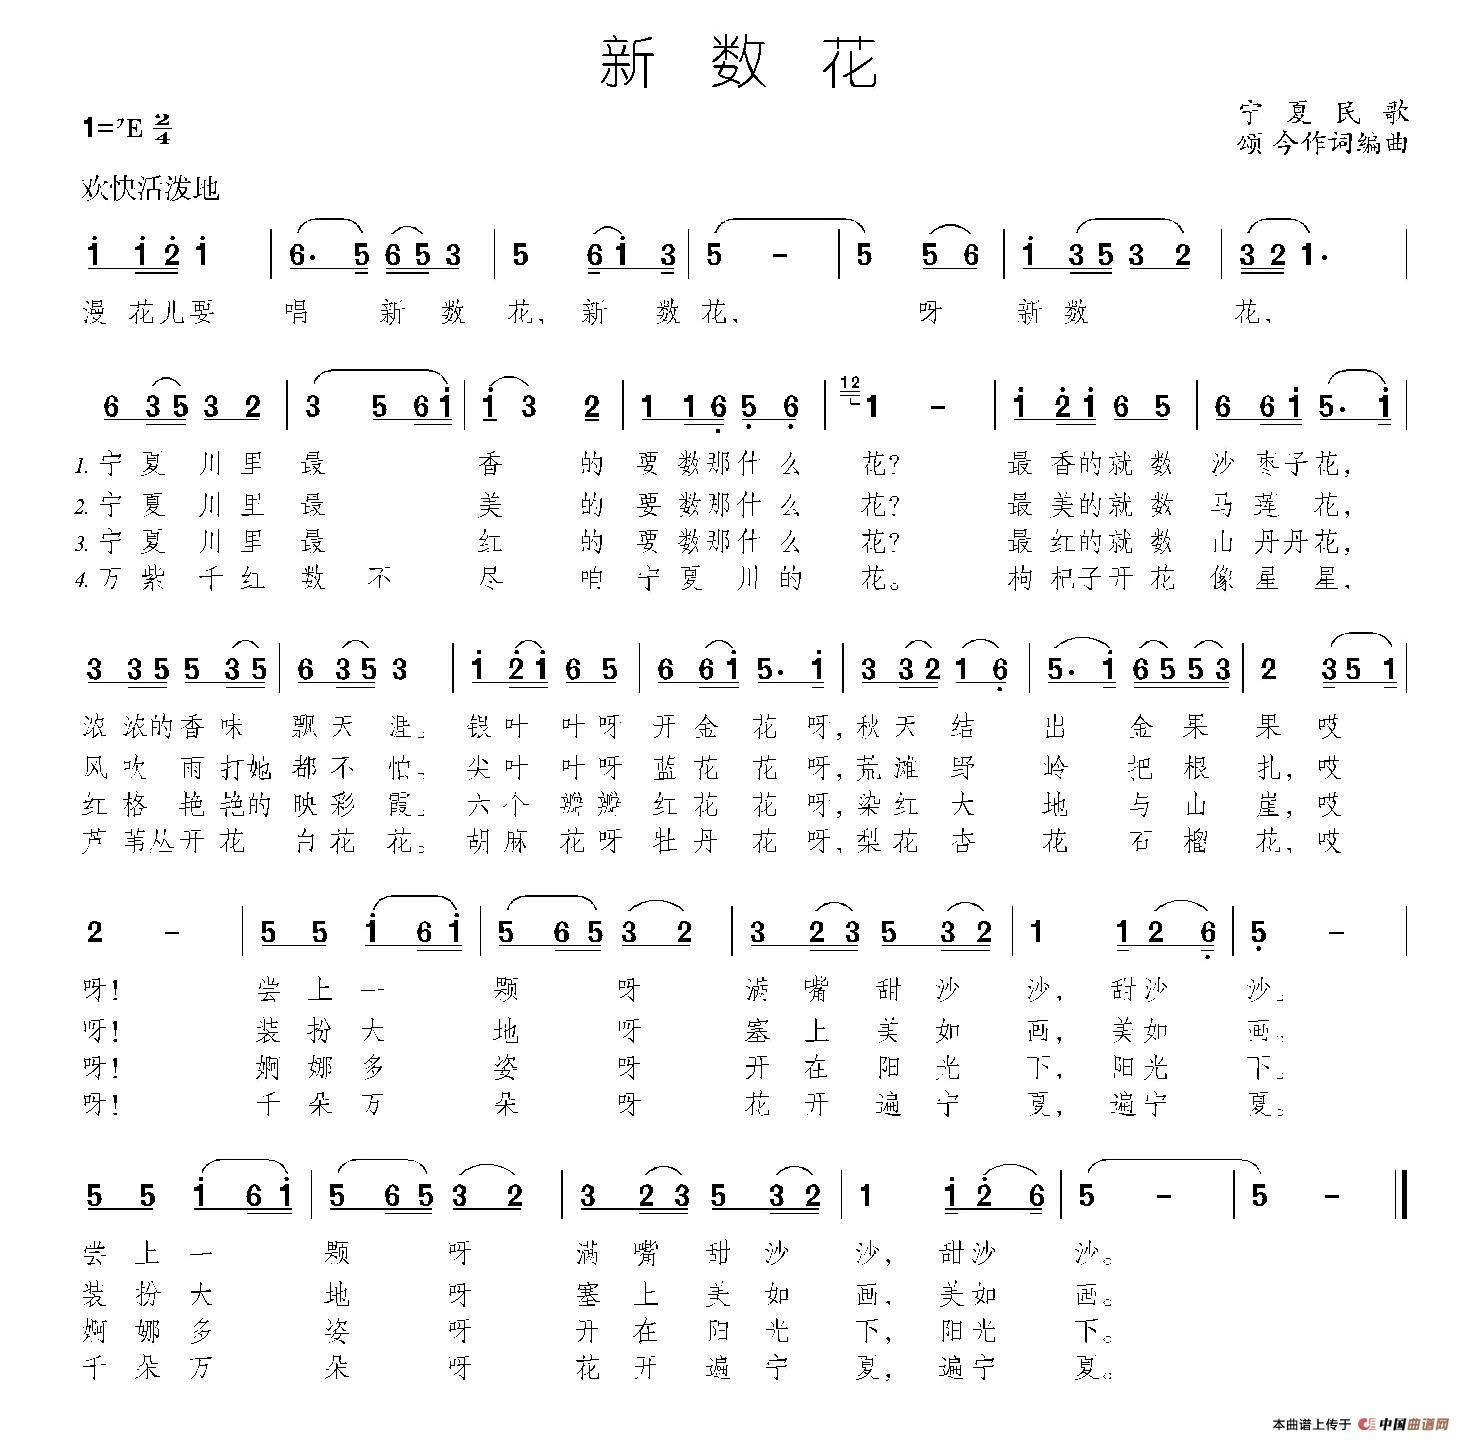 新数花(1)_001 (1).jpg